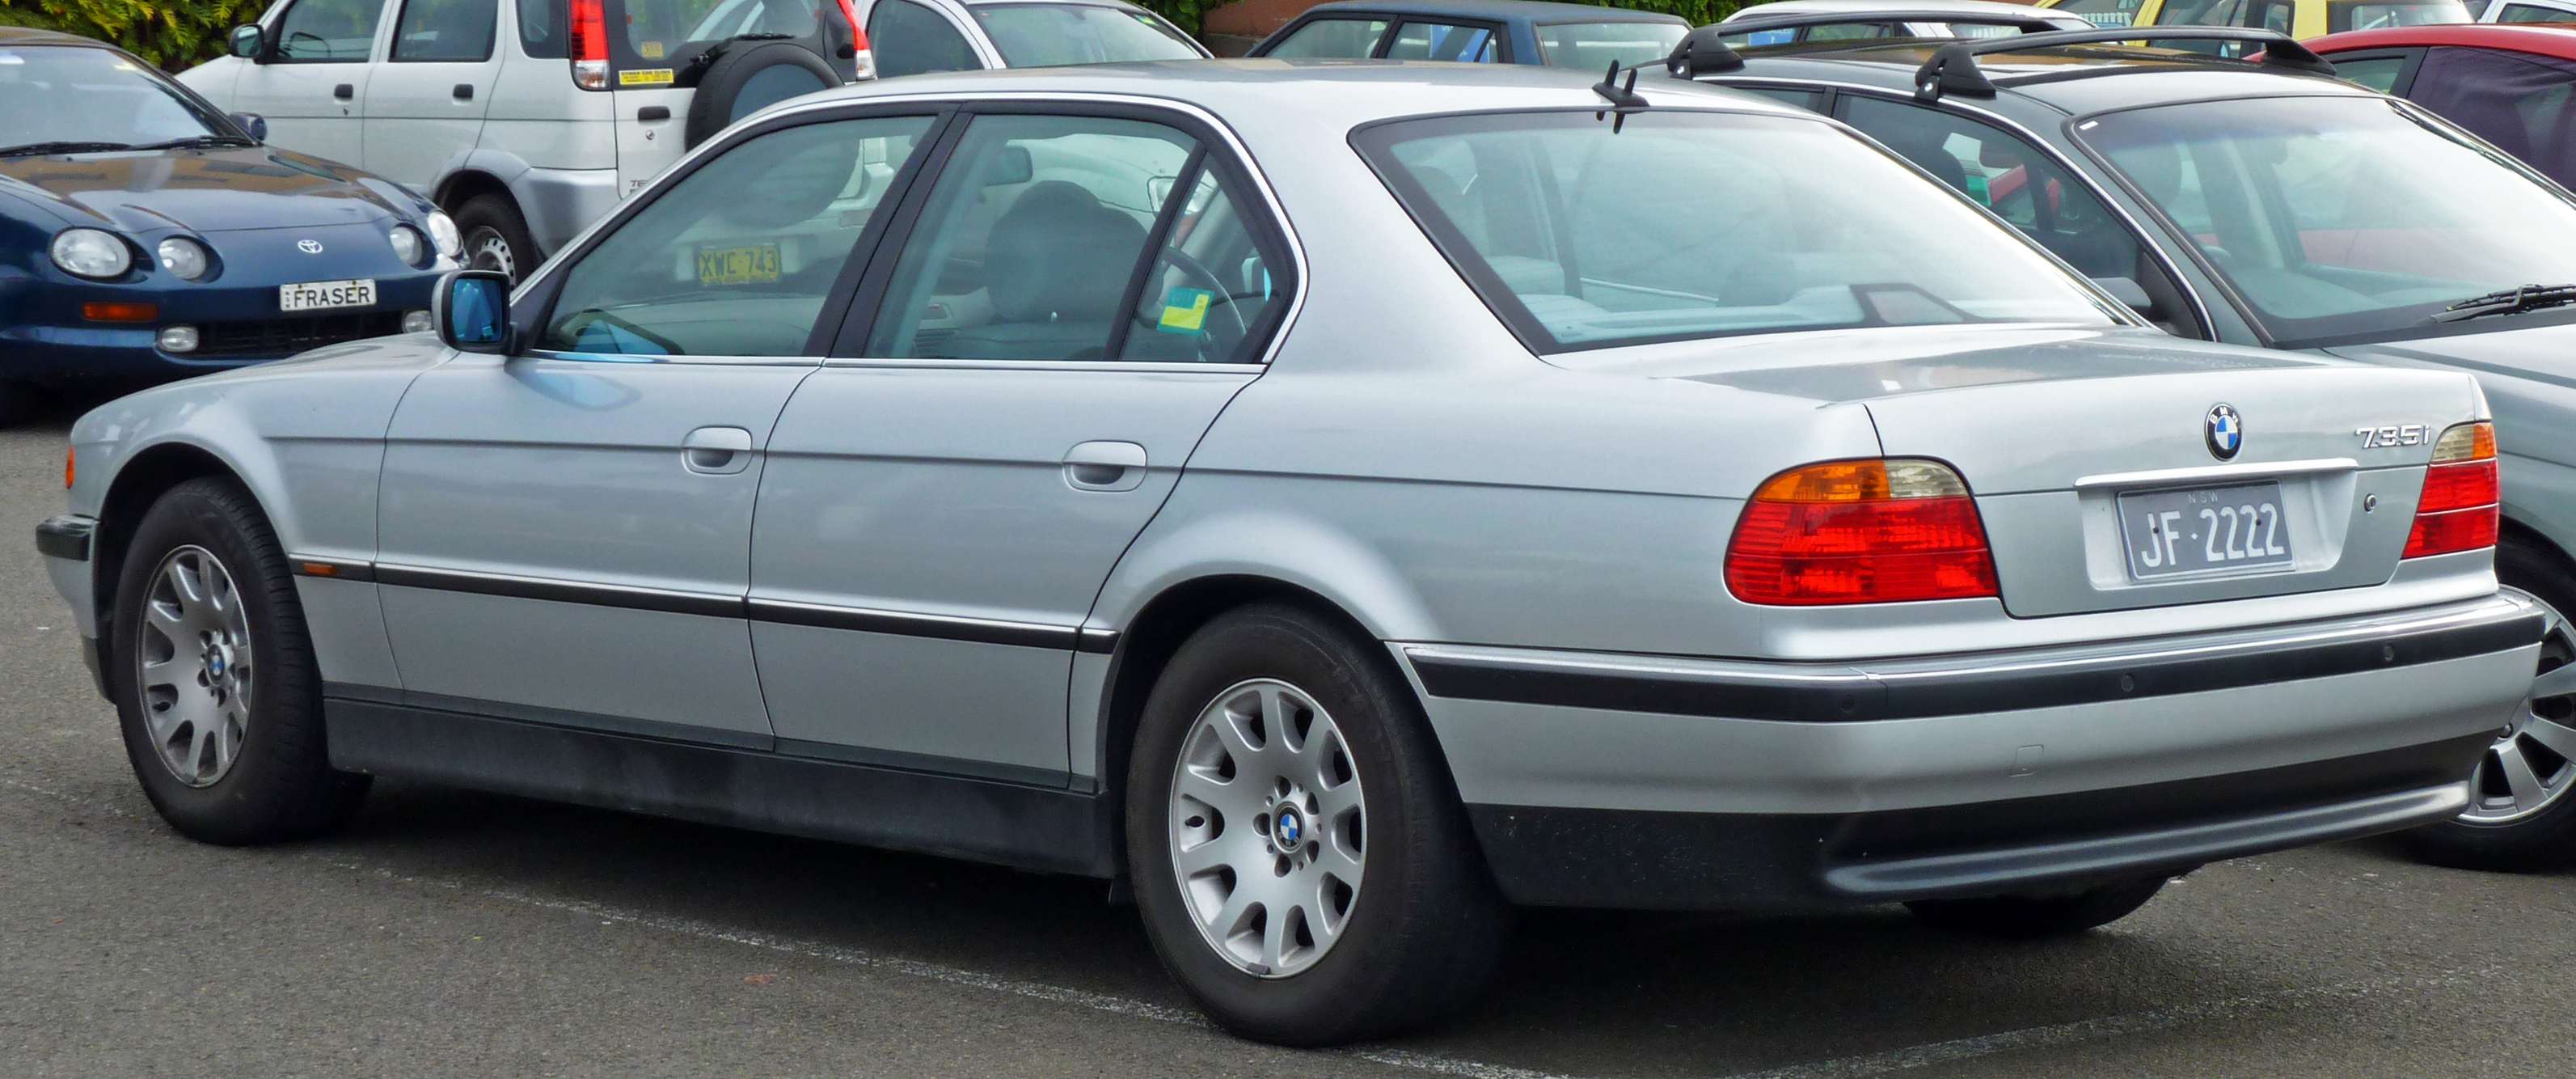 BMW 735i #7303235